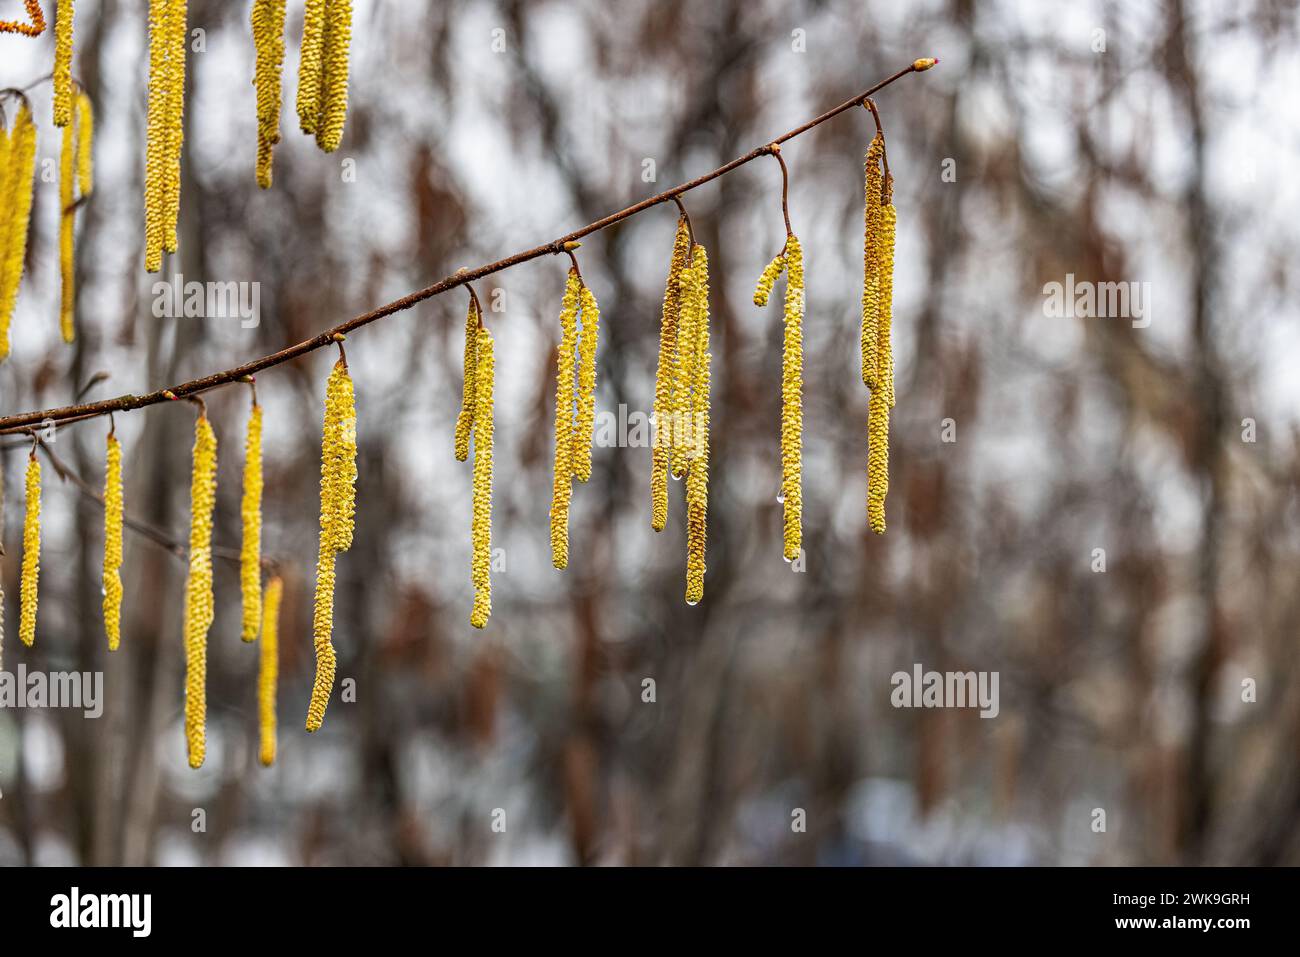 Haslenpollen hägen, während es regnet, von den Bäume. Für Allergiker ist dies gutes Wetter. (Rapperswil-Jona, Schweiz, 25.02.2023) Stock Photo